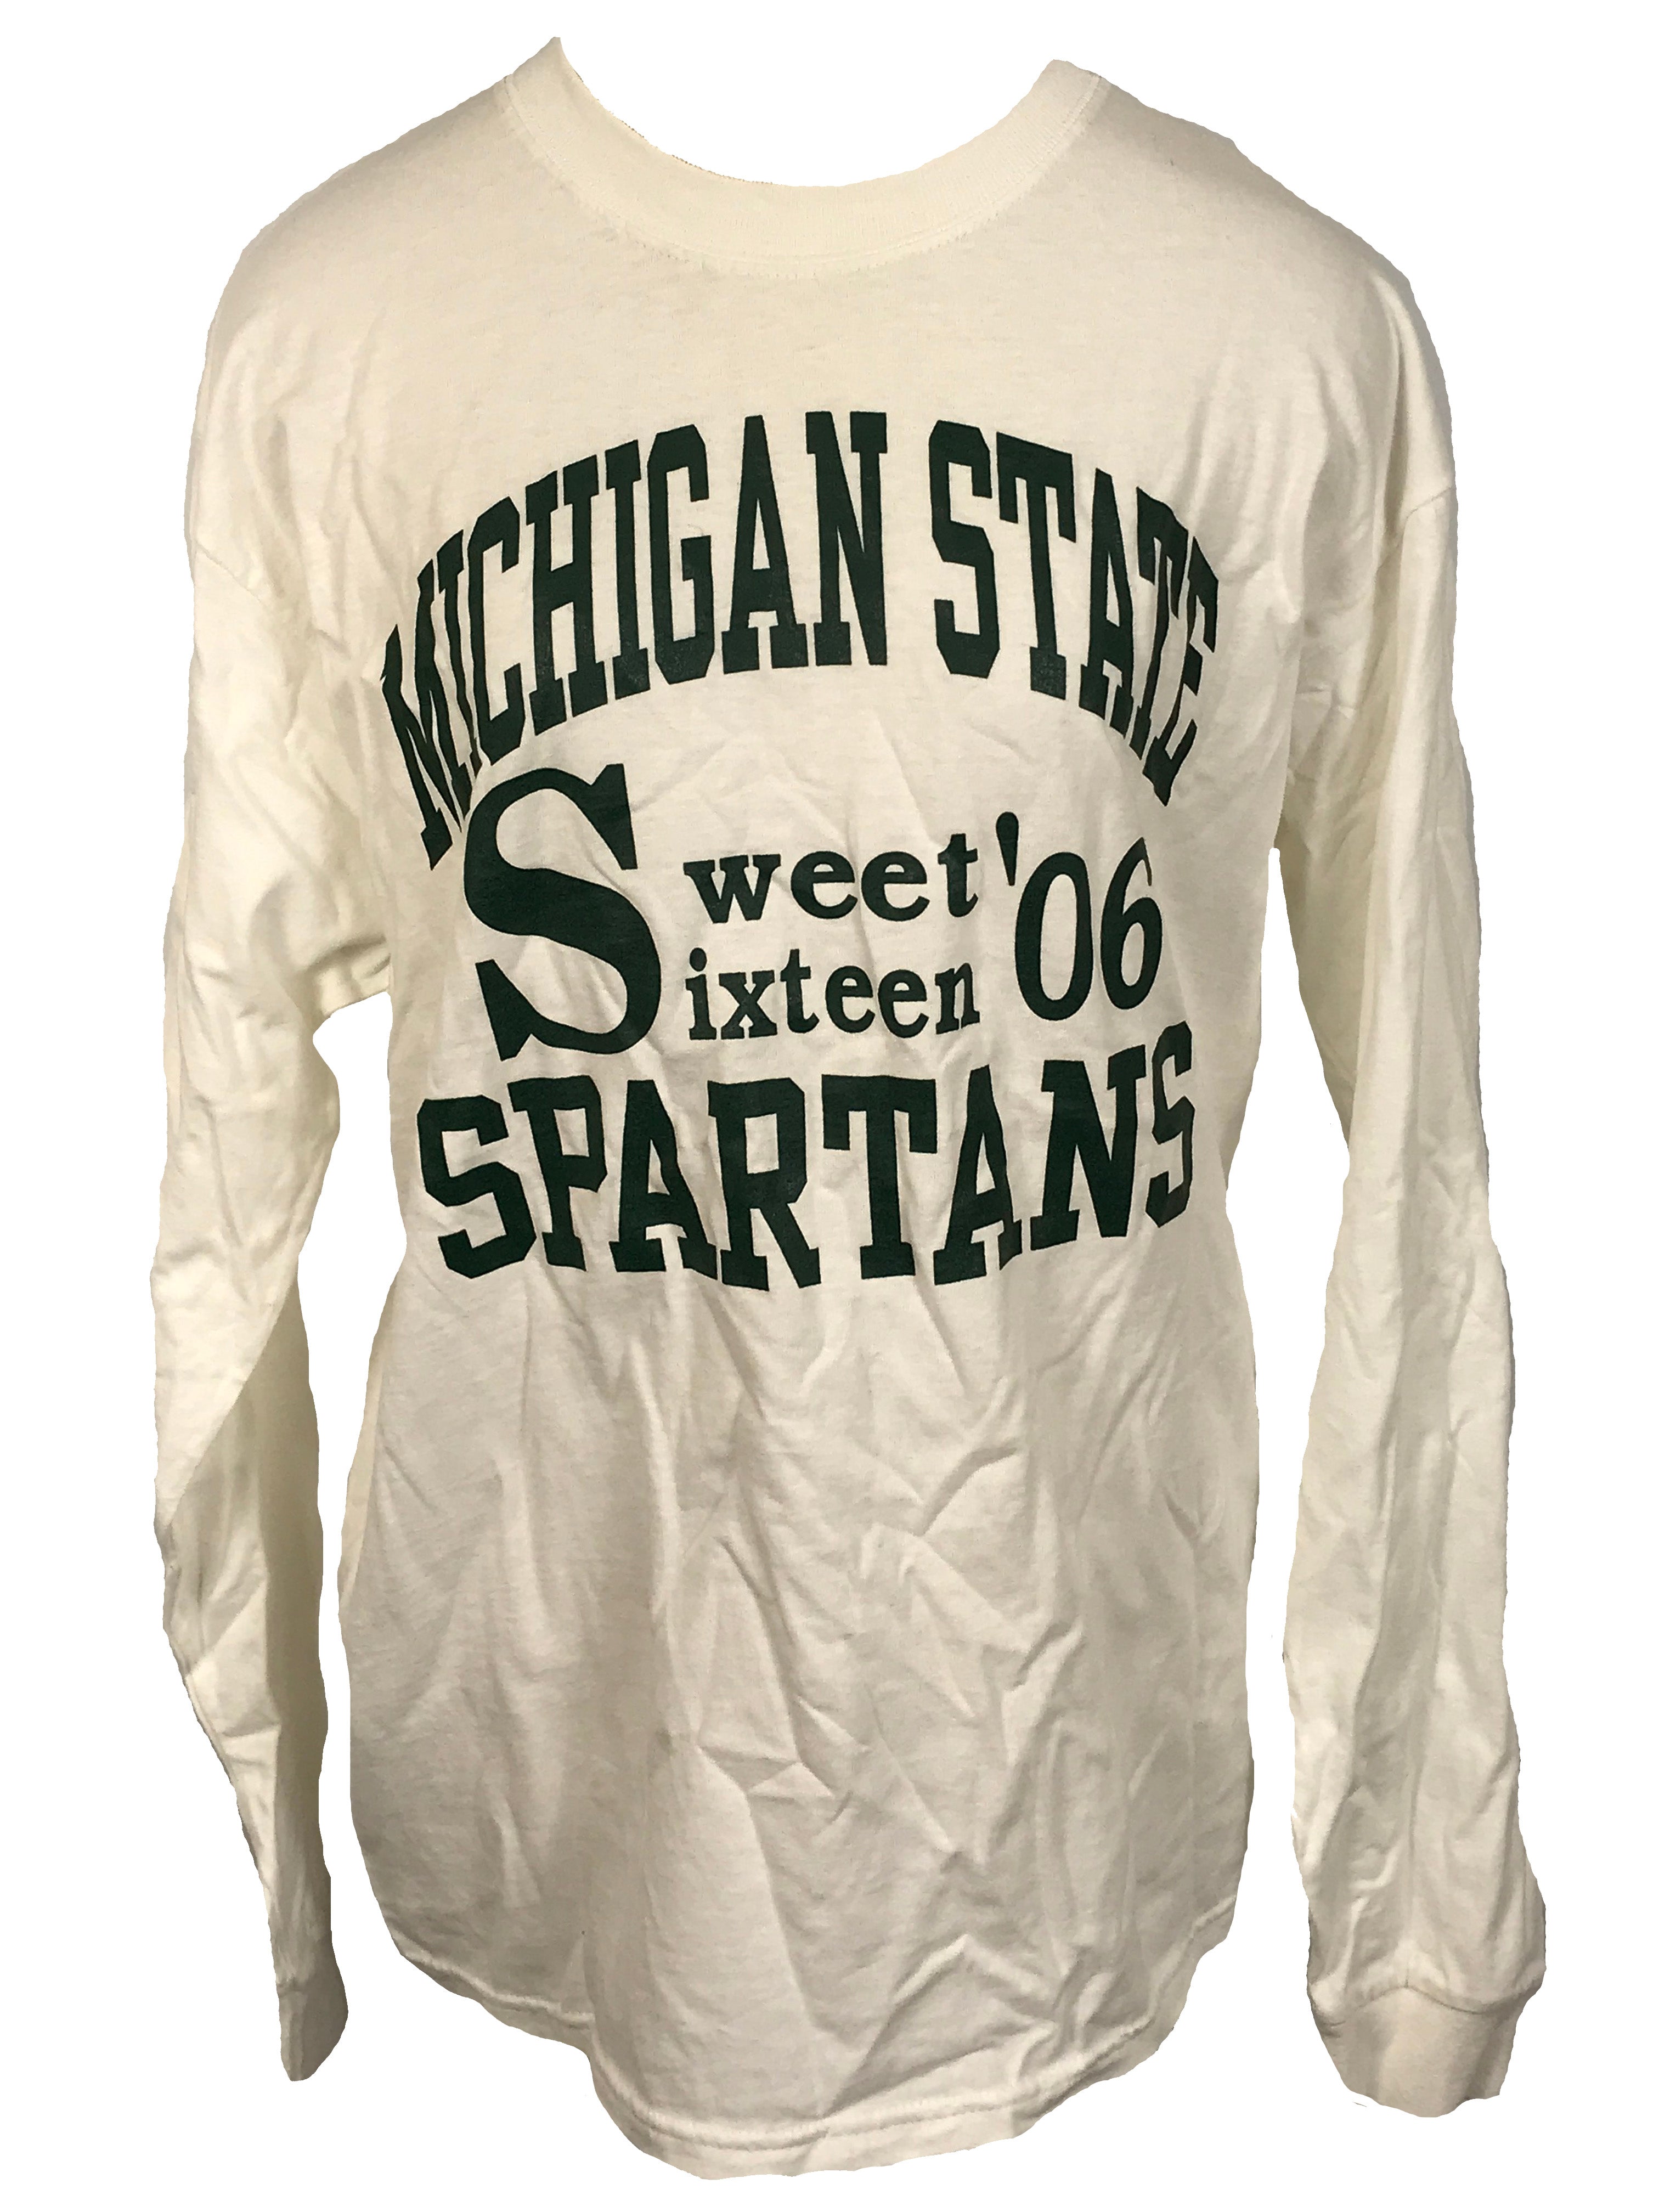 Gildan Activewear White Michigan State Long Sleeve T-shirt Men's Size Large